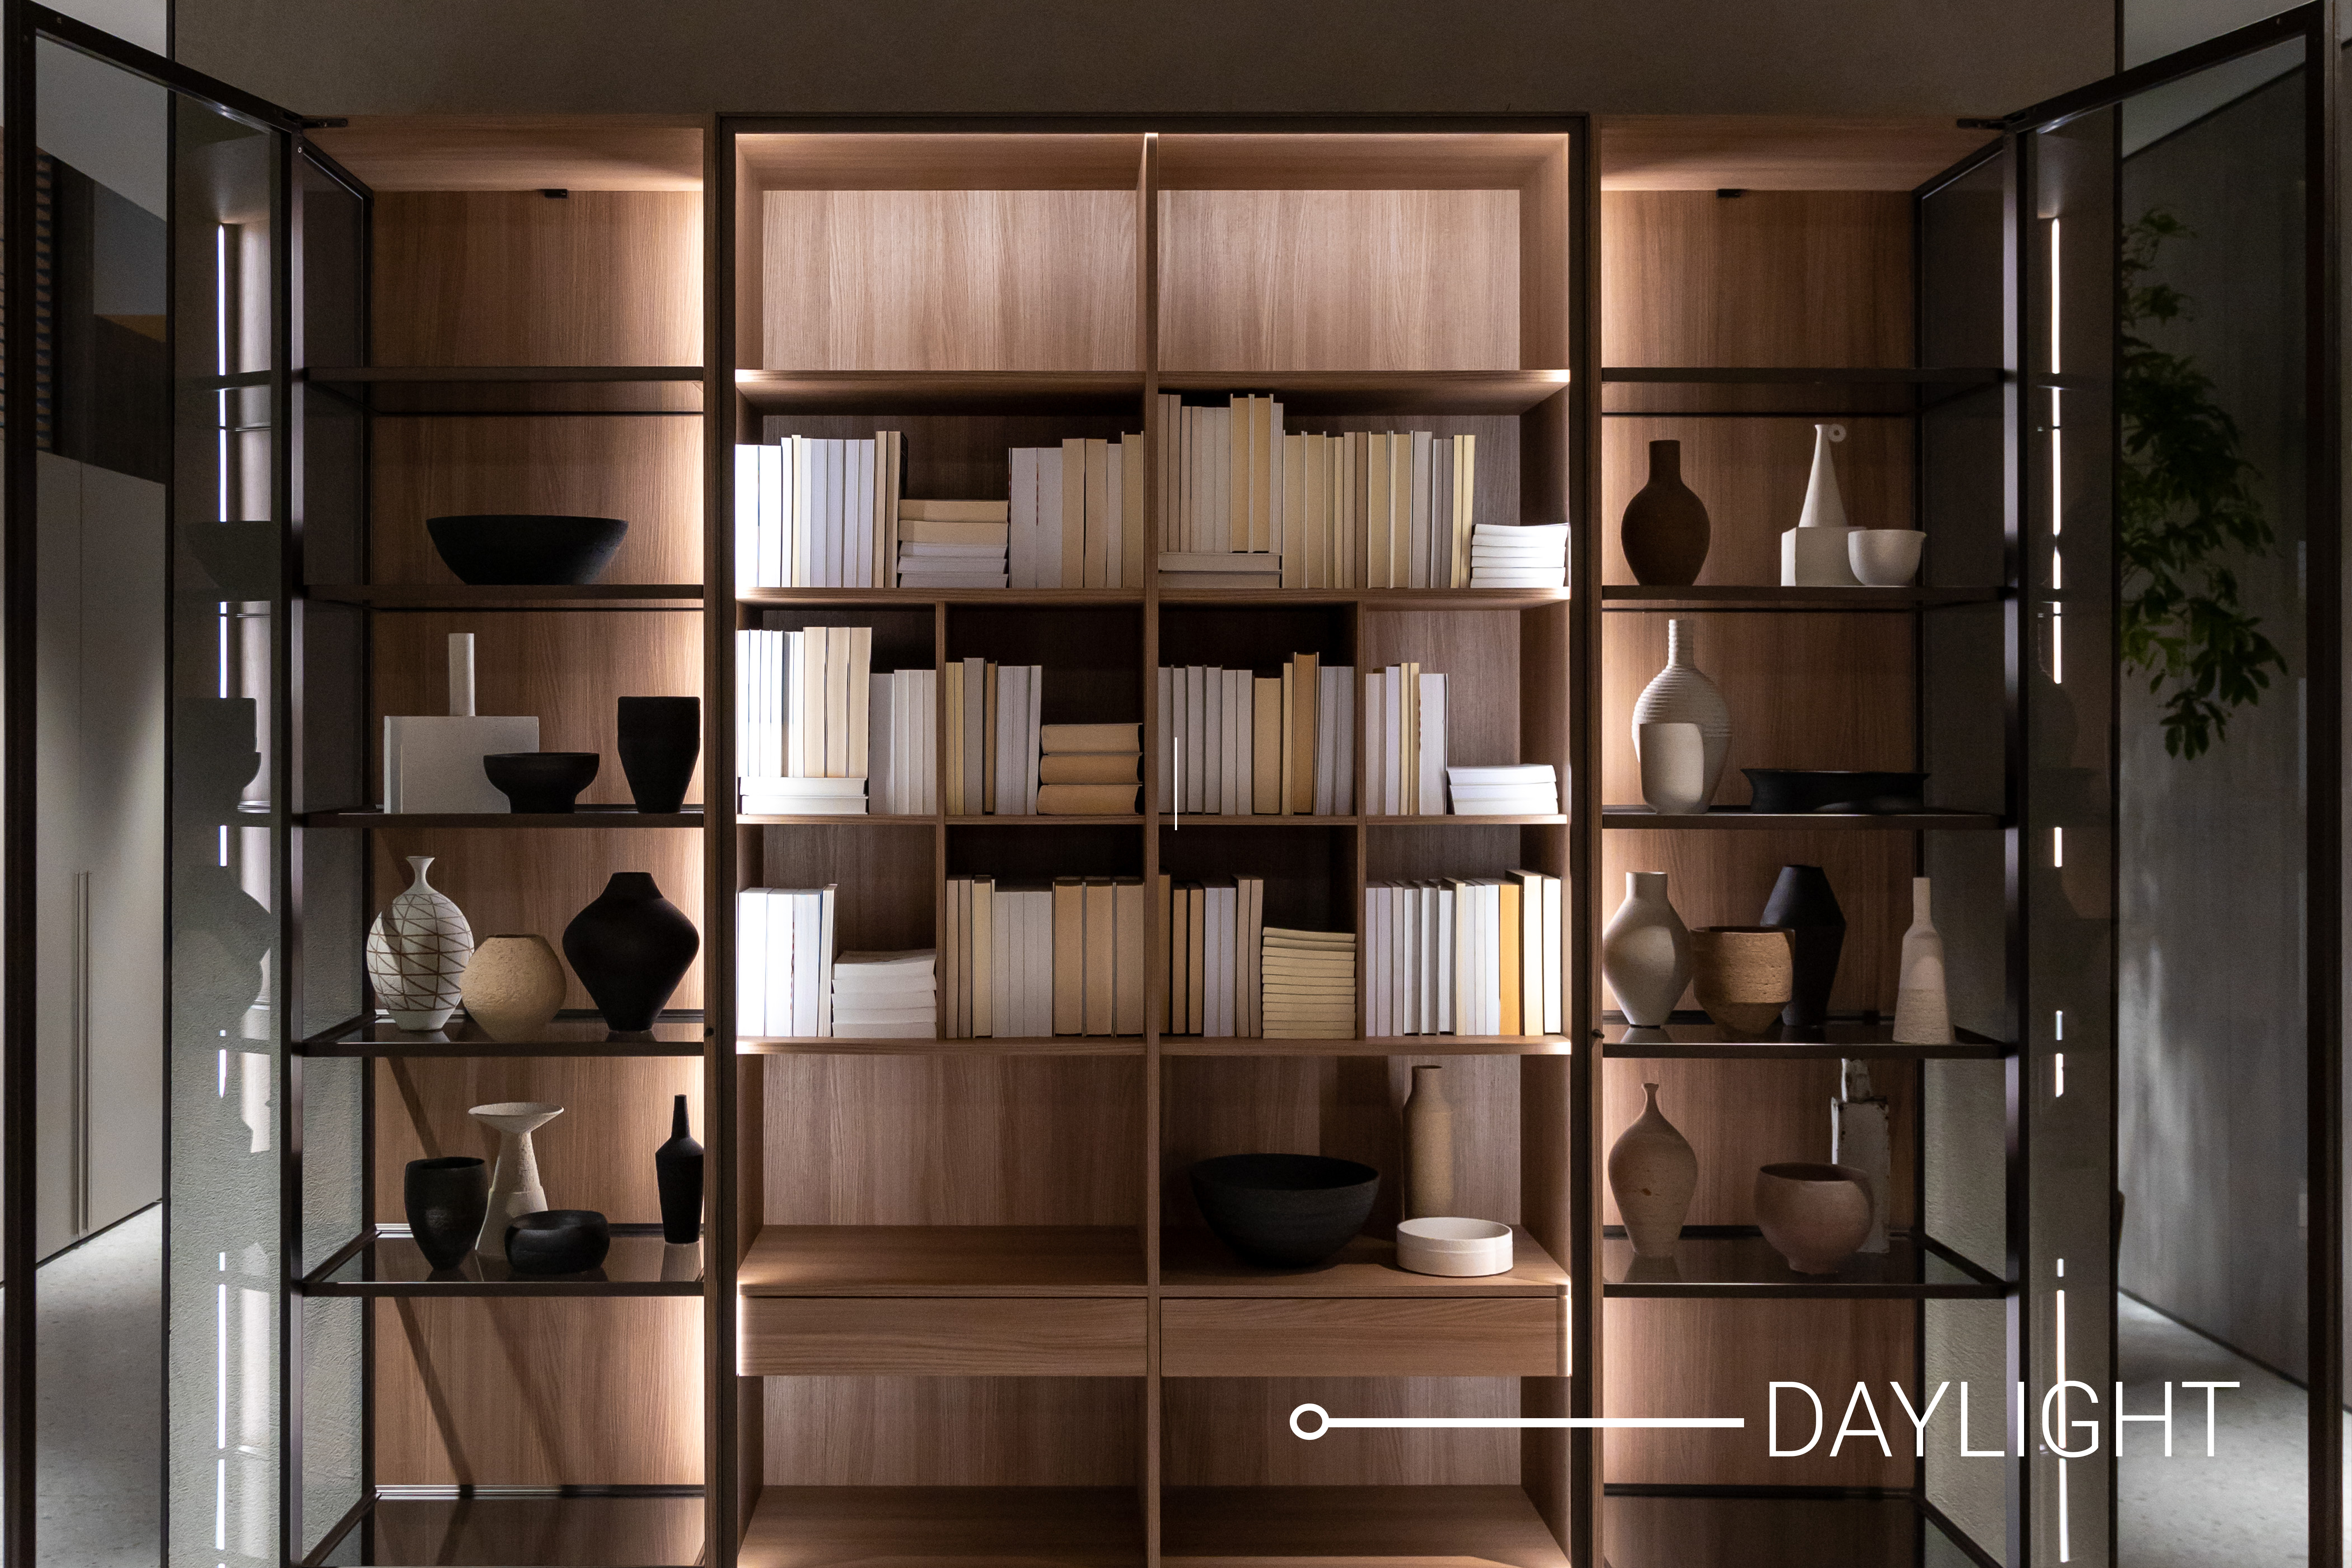 Crea un estilo armonioso en tus espacios: el sistema Daylight en el diseño de tu hogar